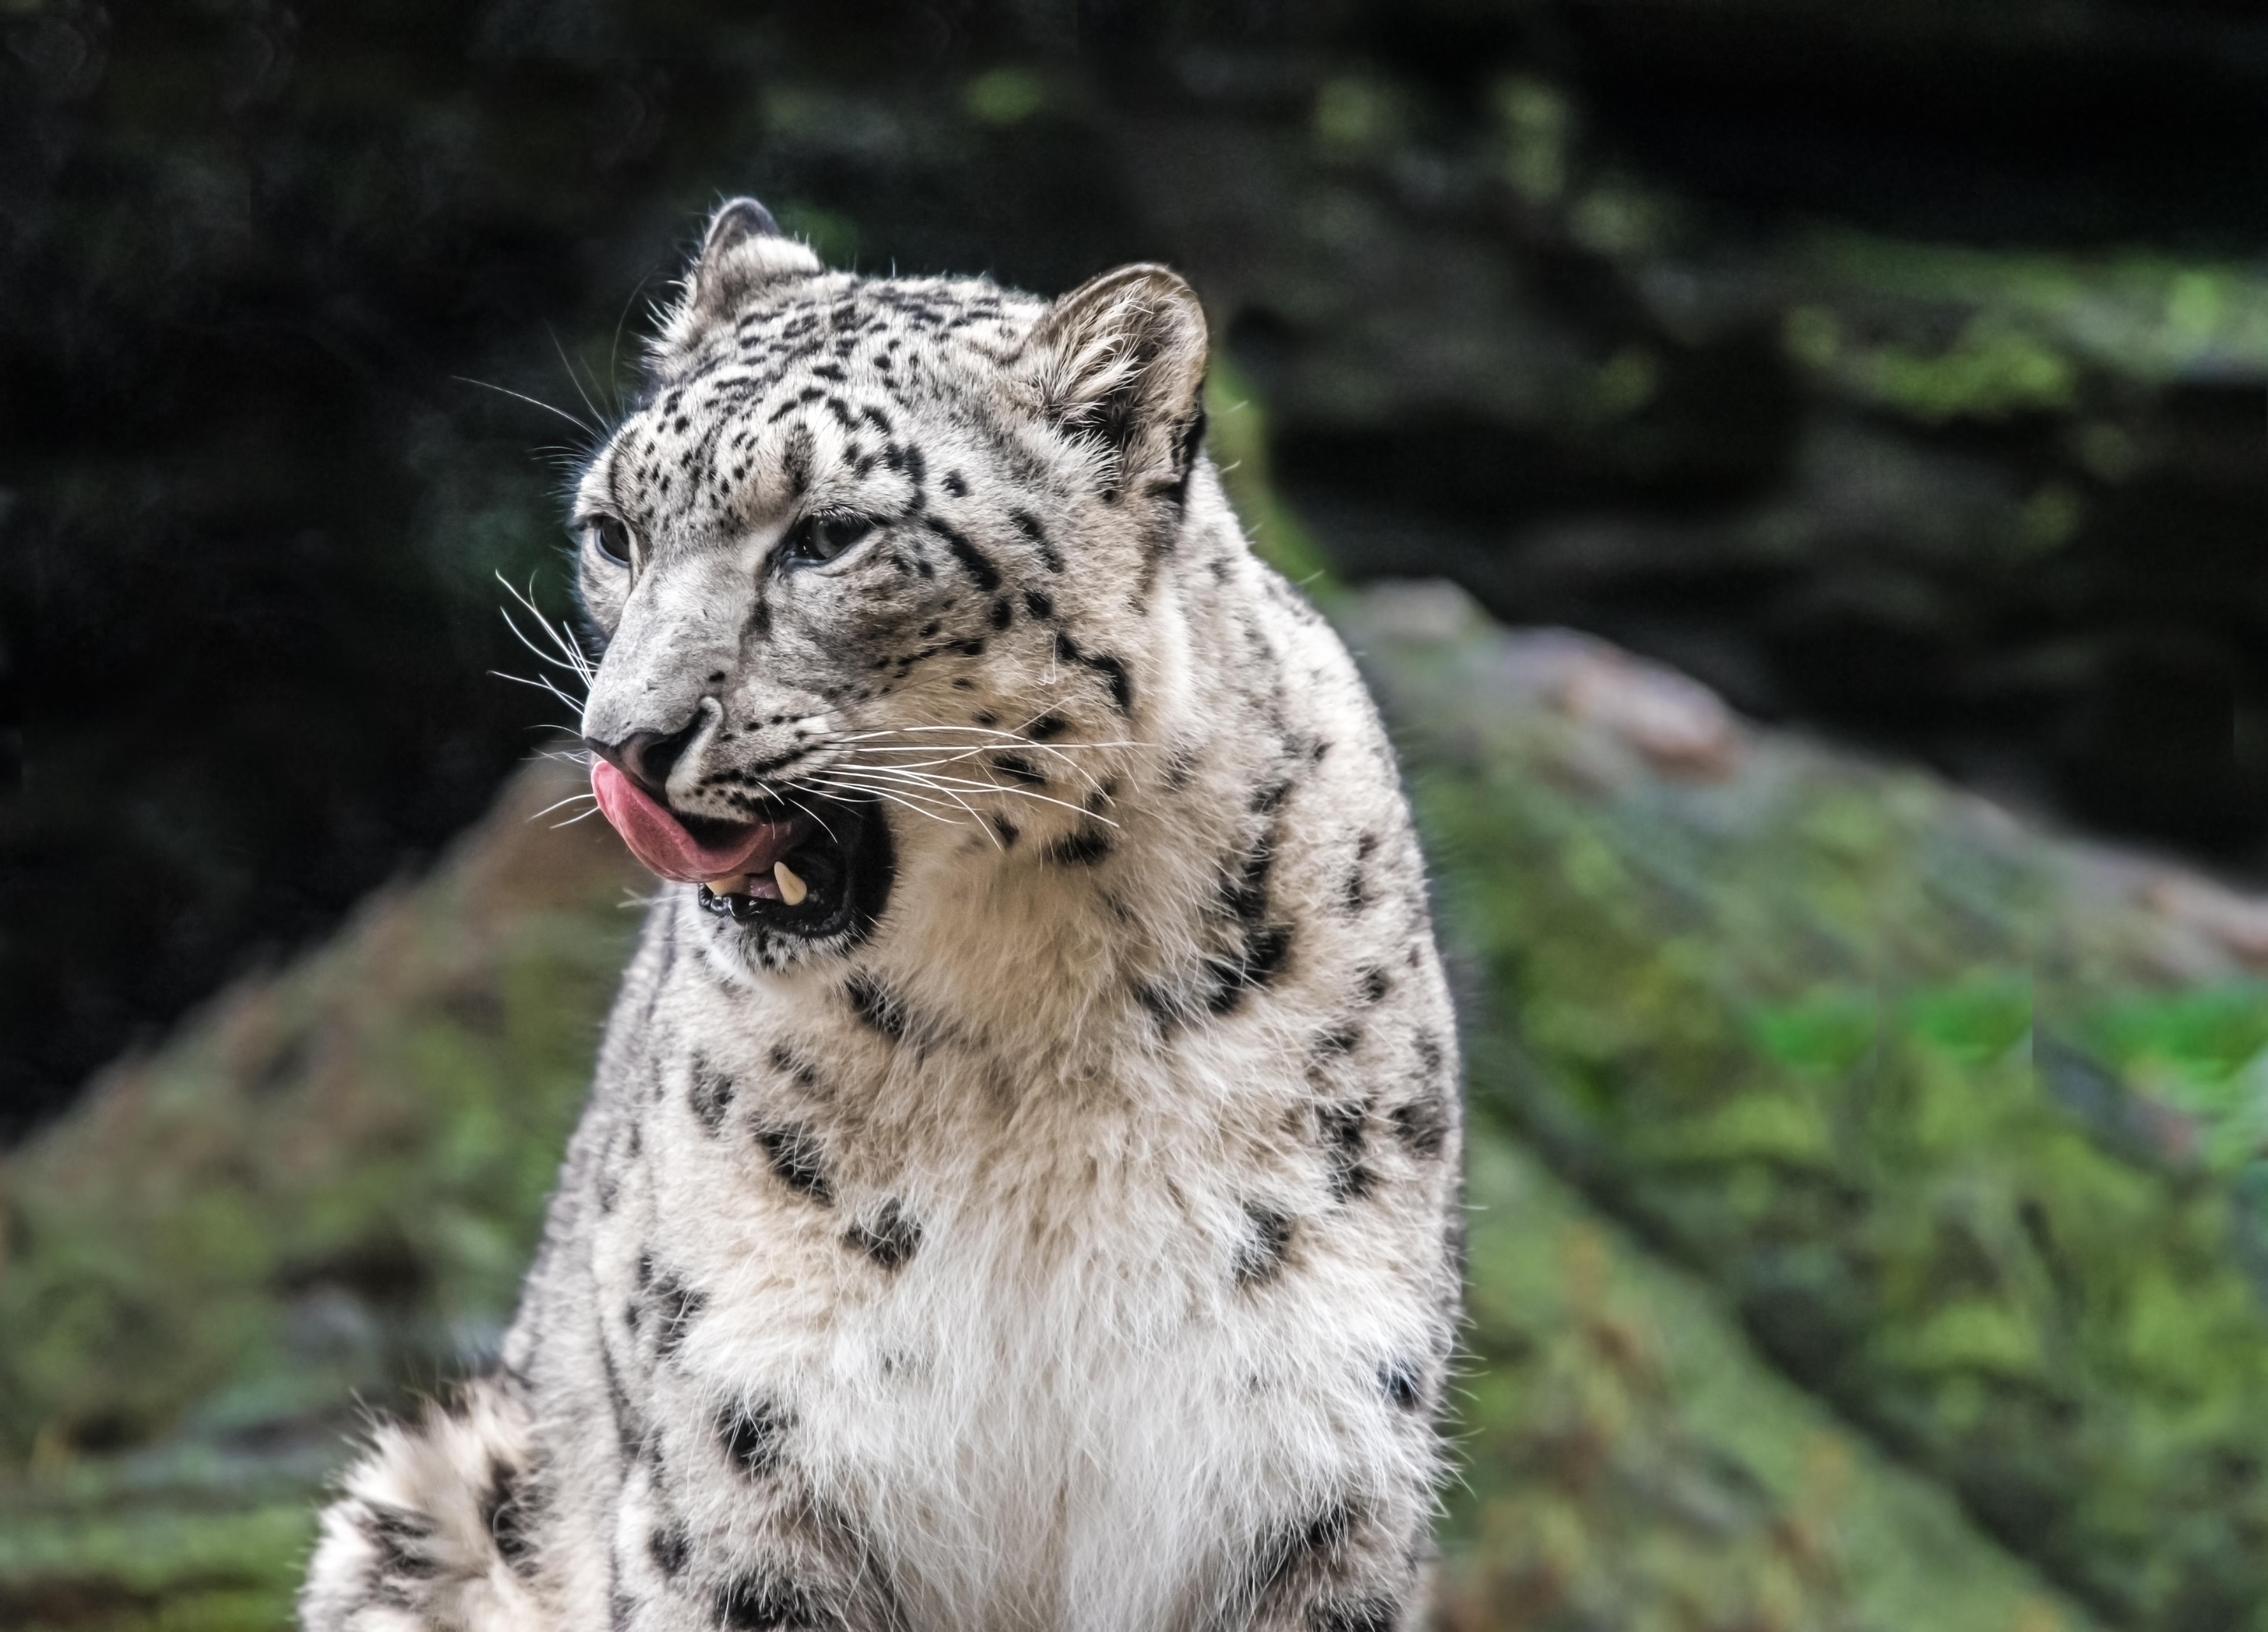 Snow leopard in Kazakhstan © LouieLea / Shutterstock